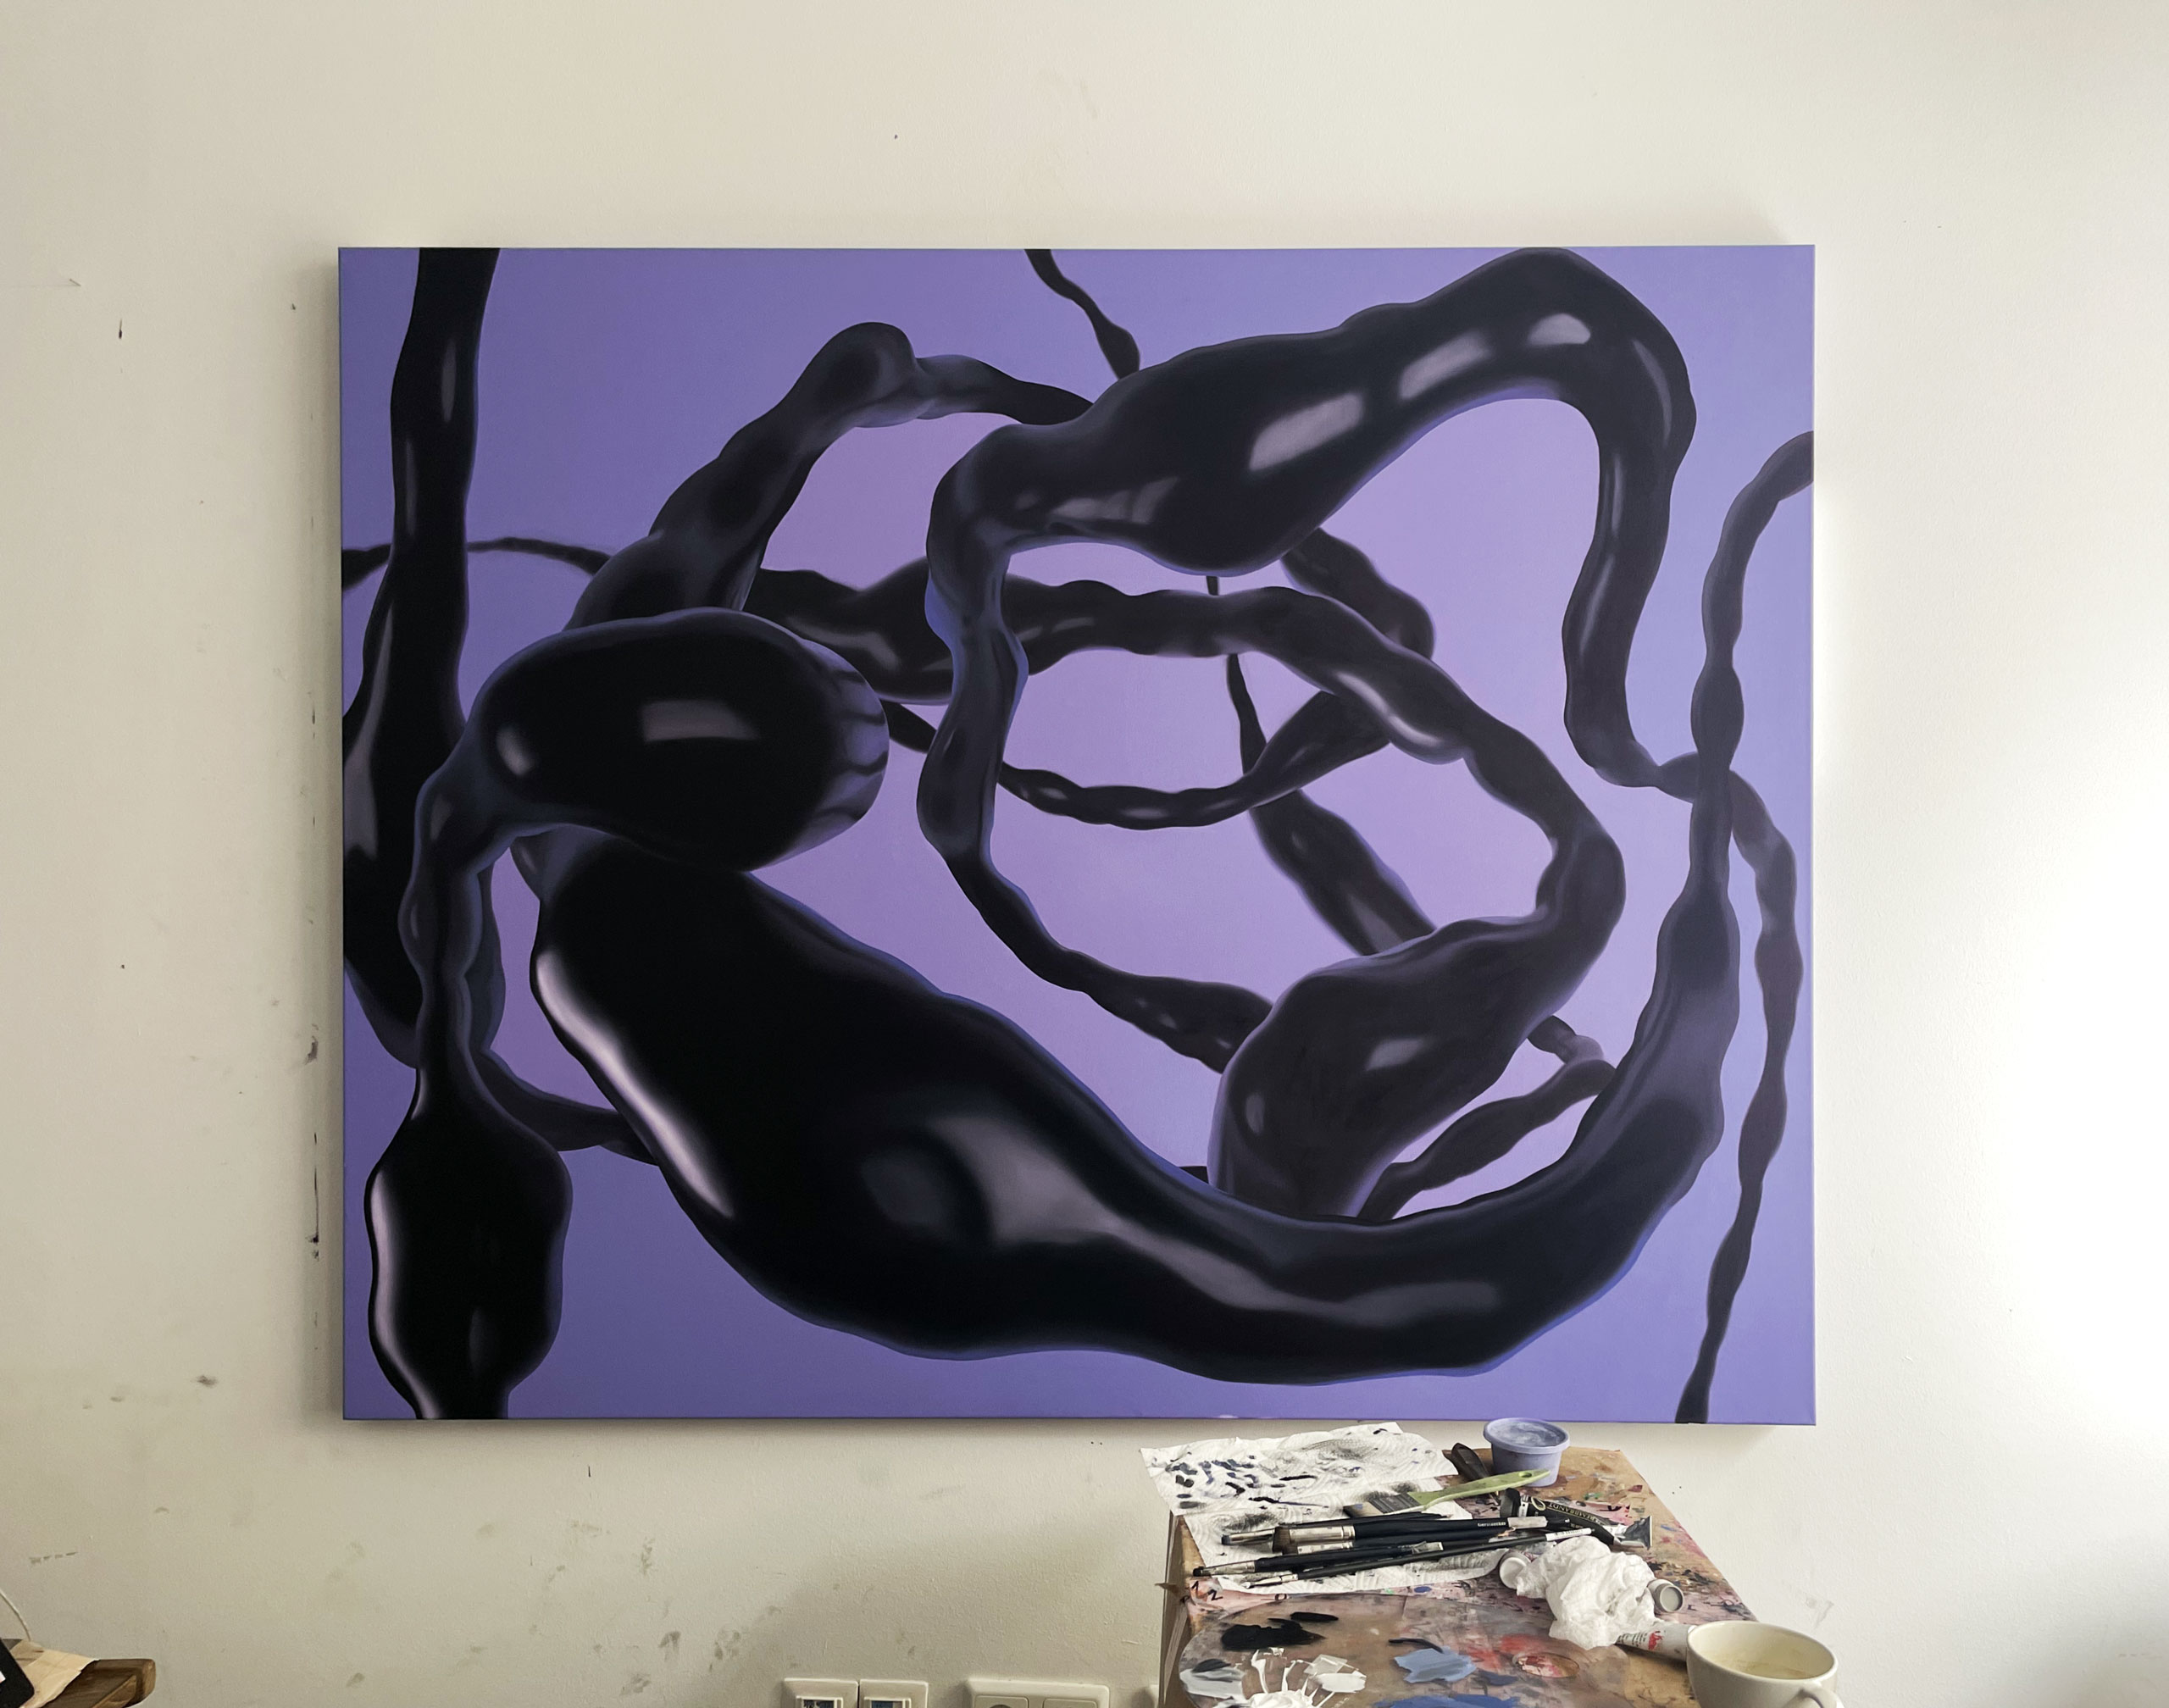 Ju-Schnee_art_kunst_wien_painting_exhibition_abstract_Meta03-1